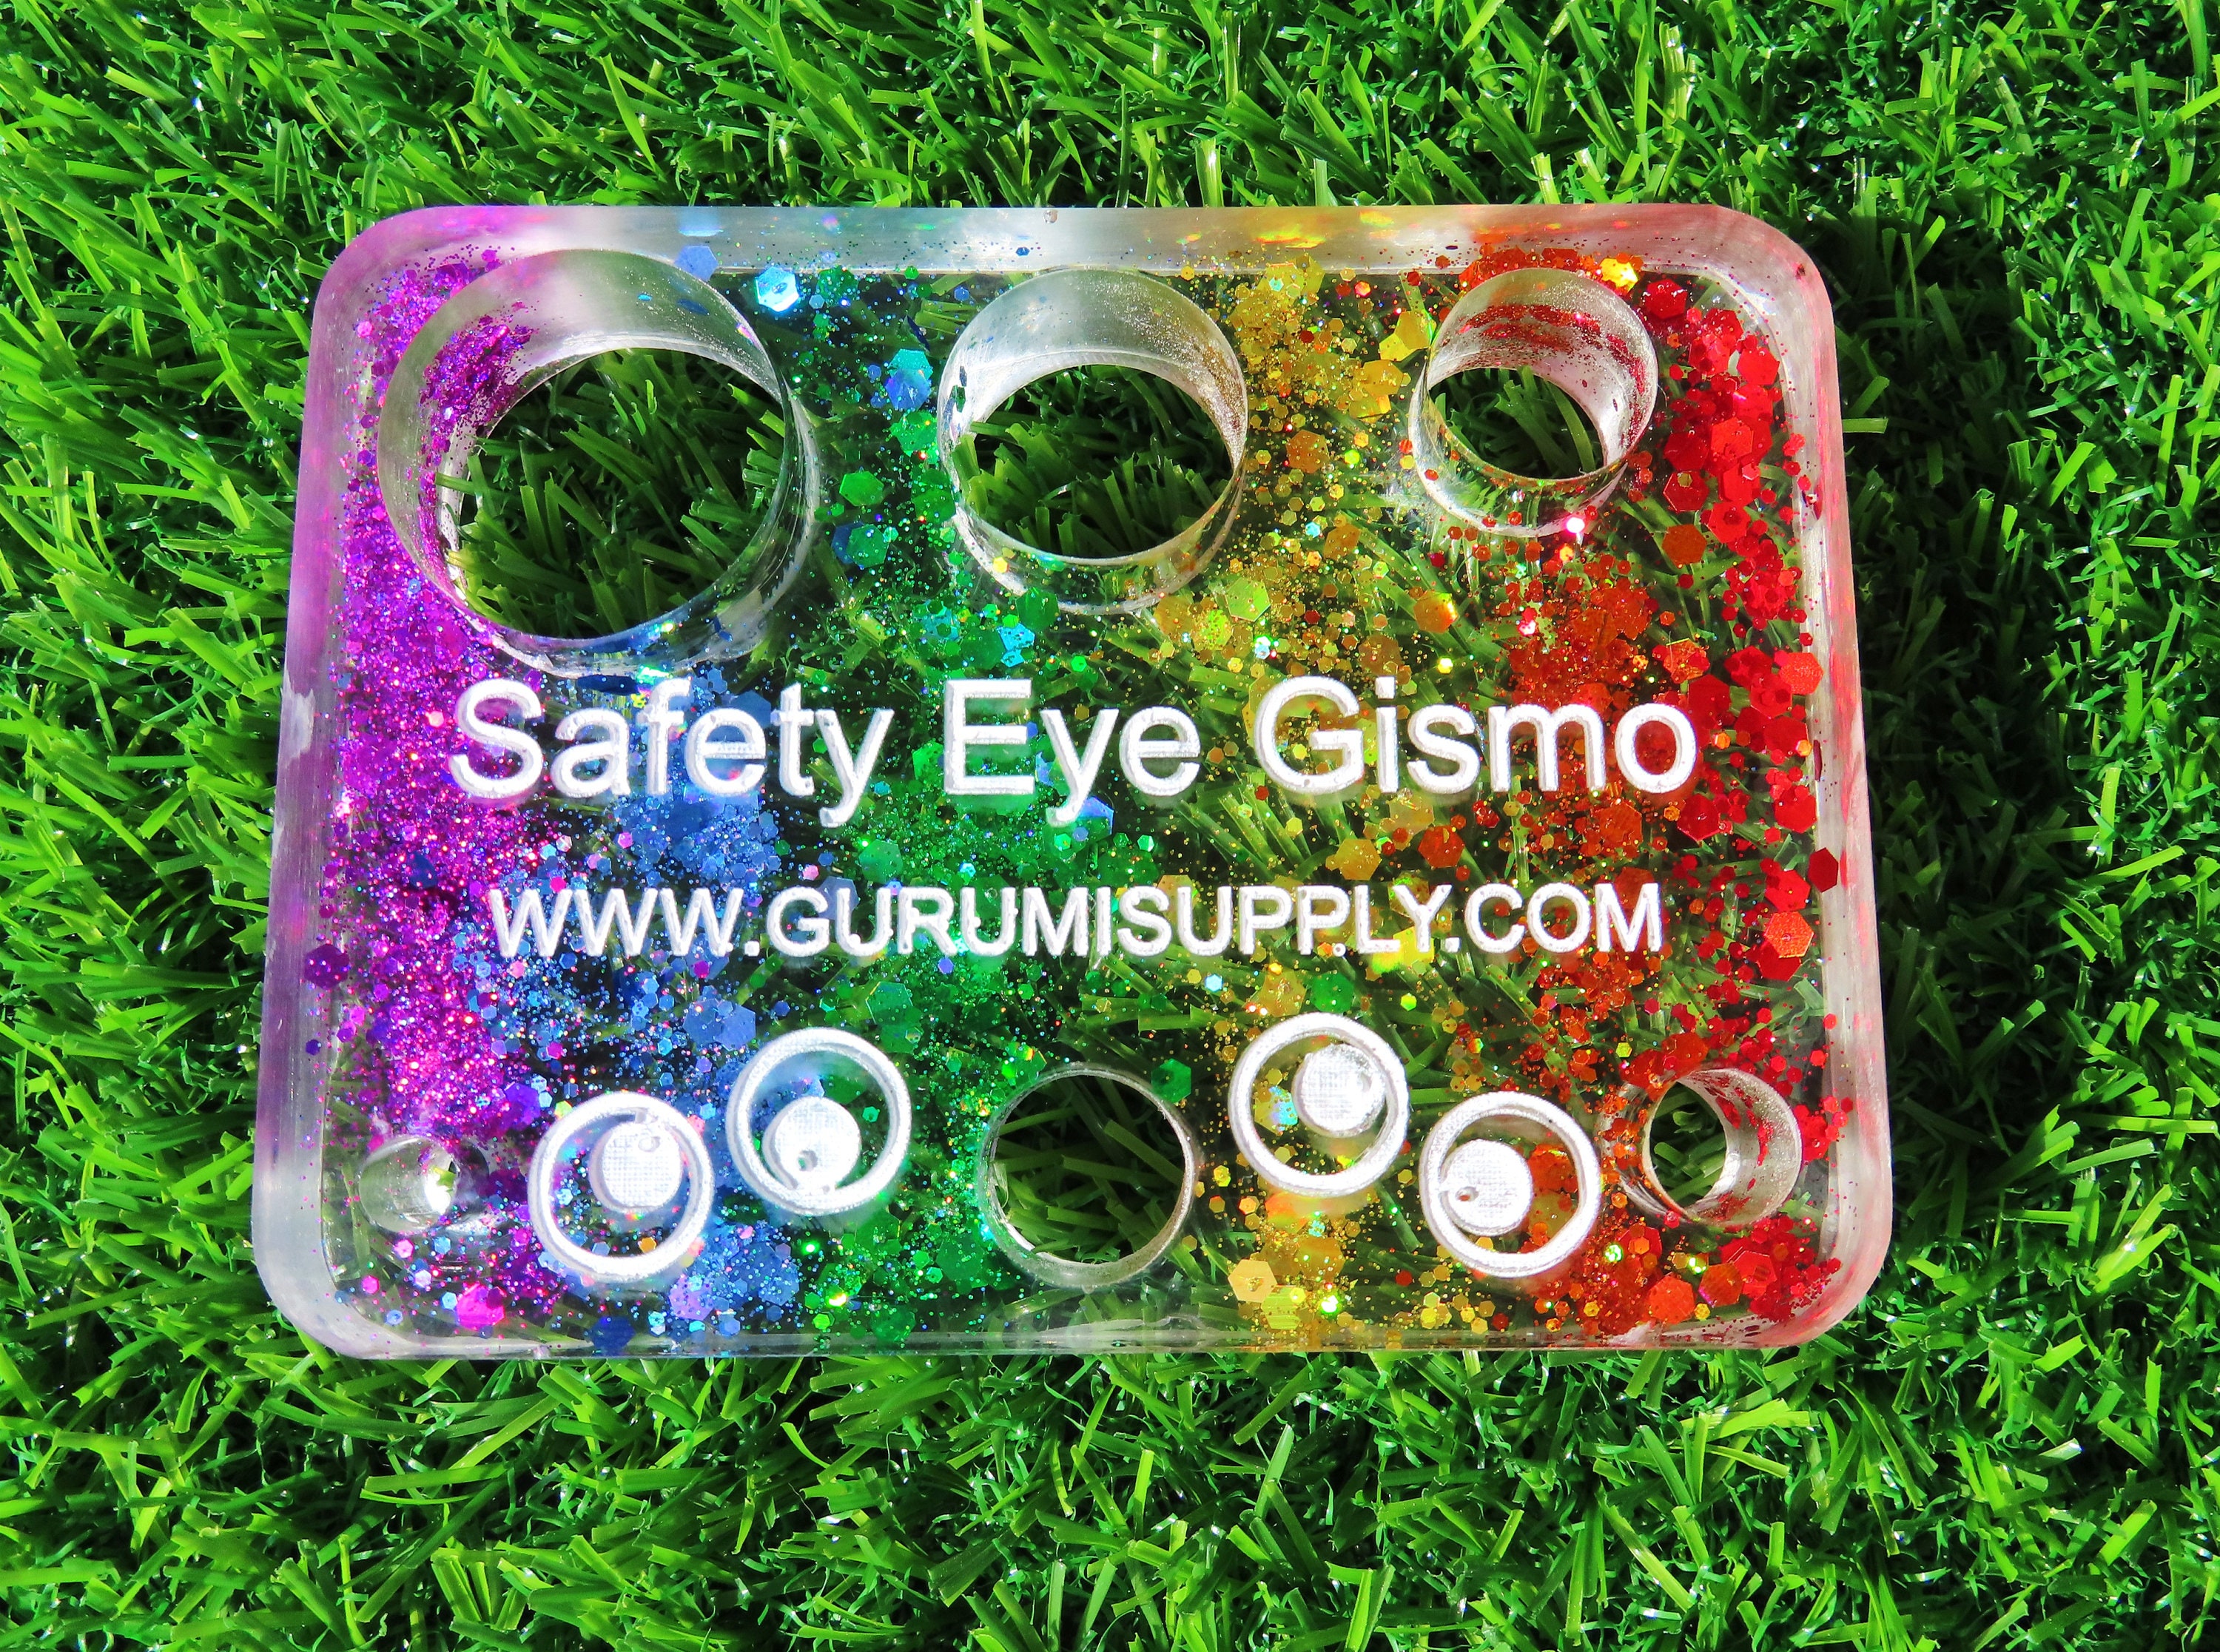 Safety Eye Jig, Safety Eye Tool, Safety Eye Helper, Amigurumi Eyes,  Amigurumi Crochet Eyes, Safety Eye Gismo, Safety Eye for Amigurumi 